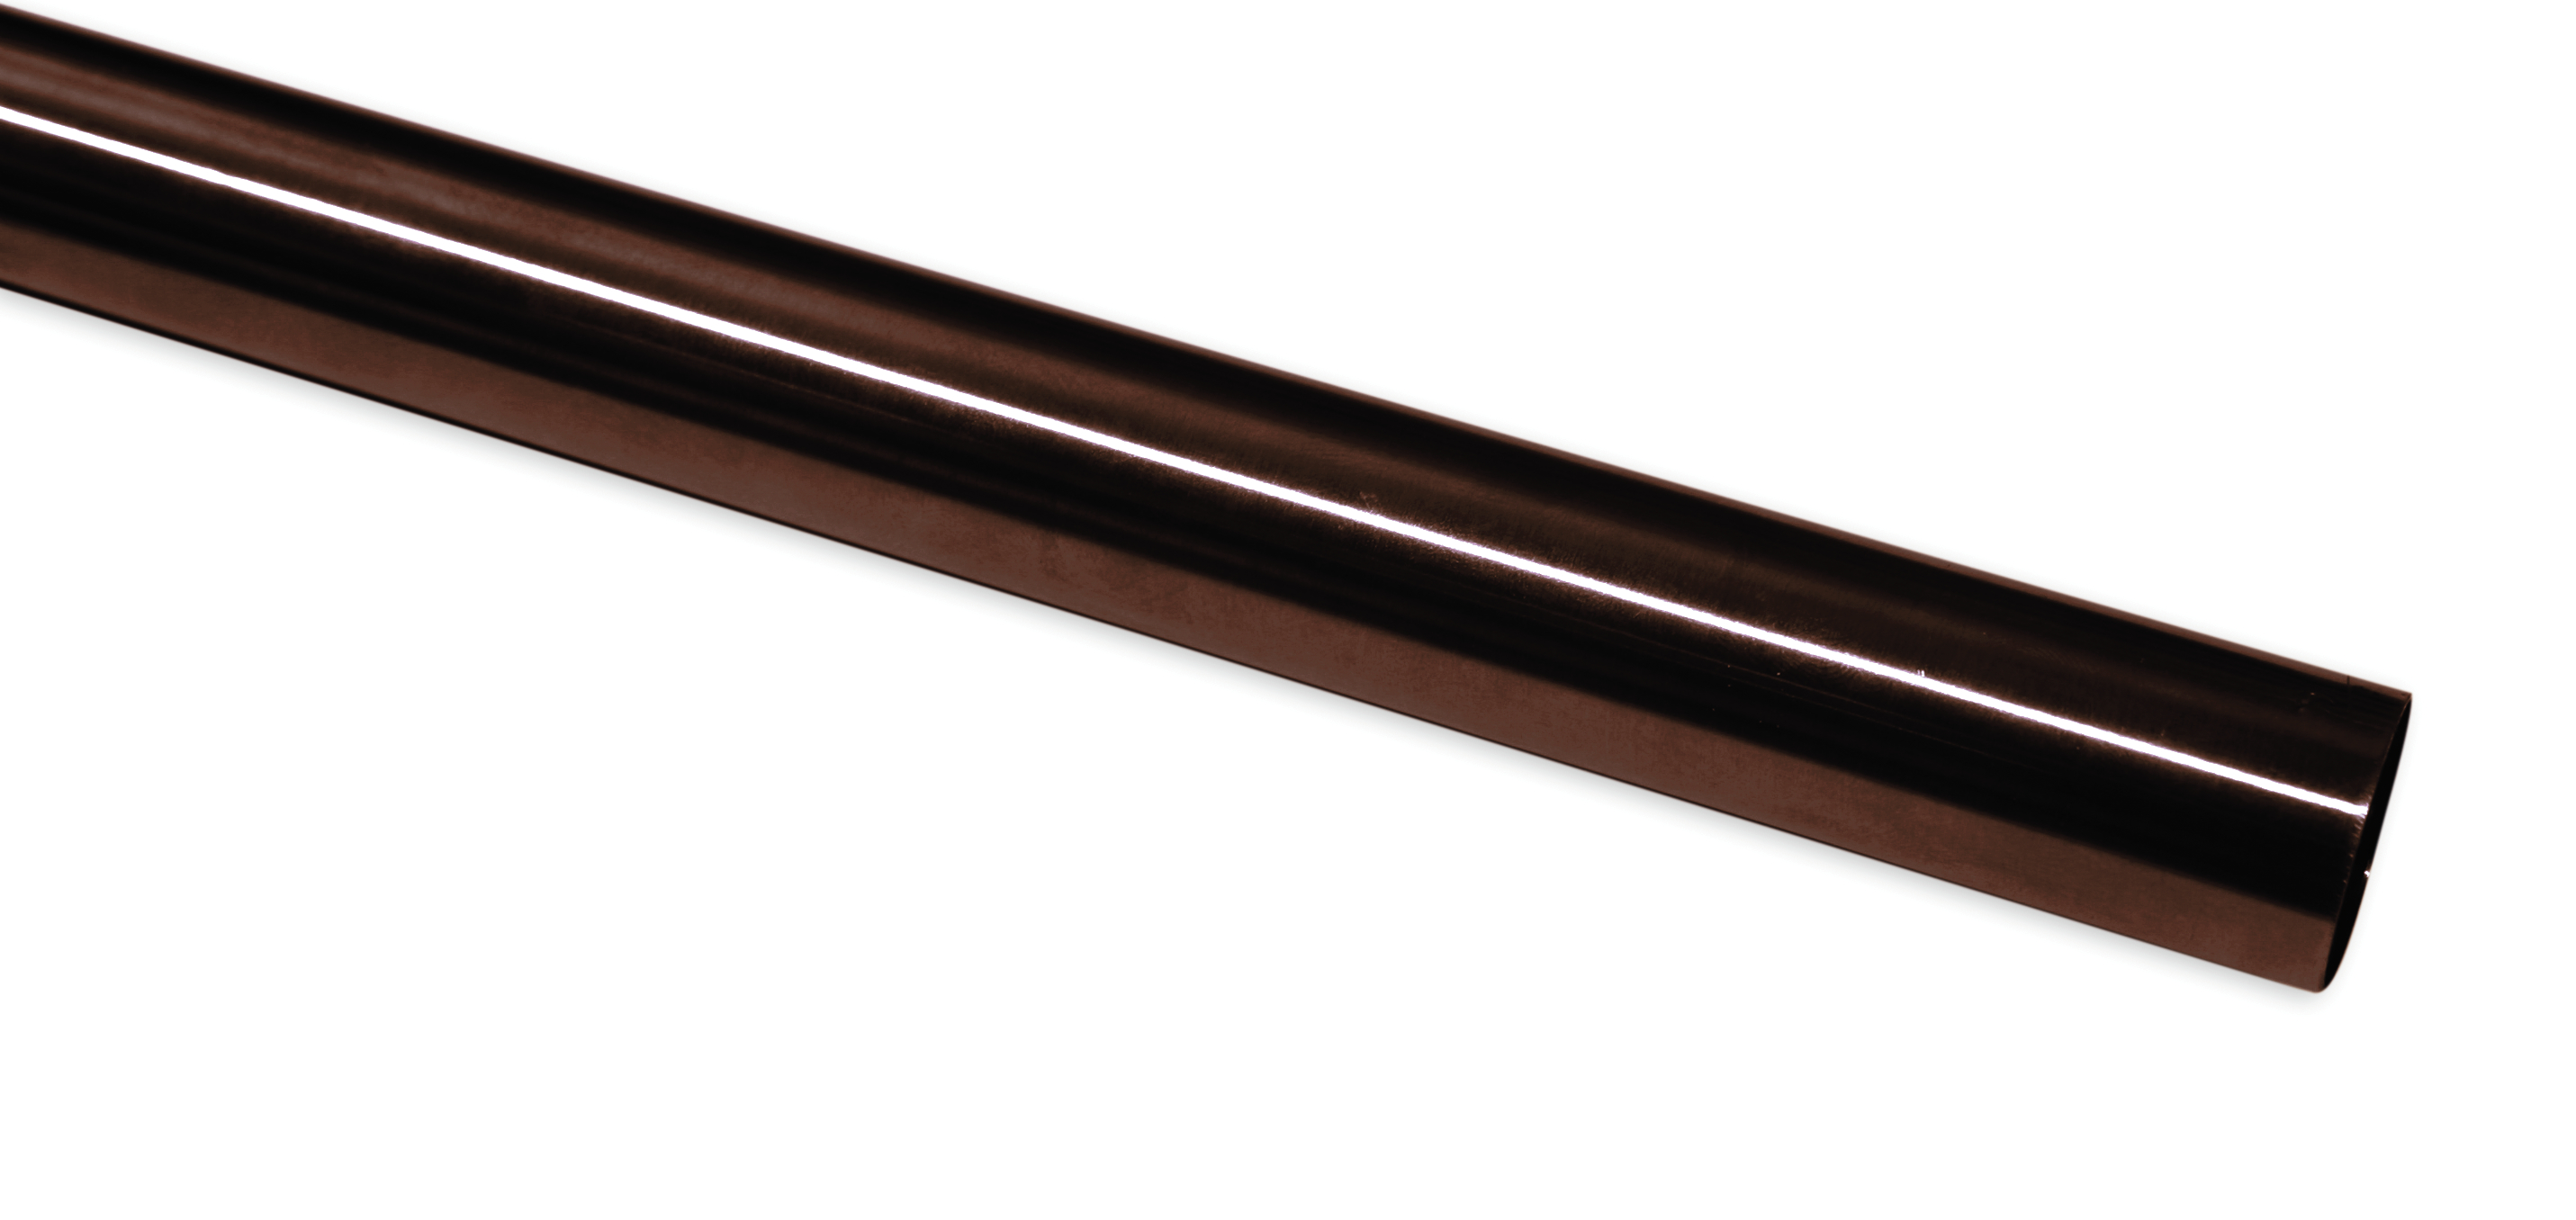 Záclonová tyč Europa 19/200cm, bronzová (Kov, od délky tyče 200cm doporučujeme použít třetí nosník.)